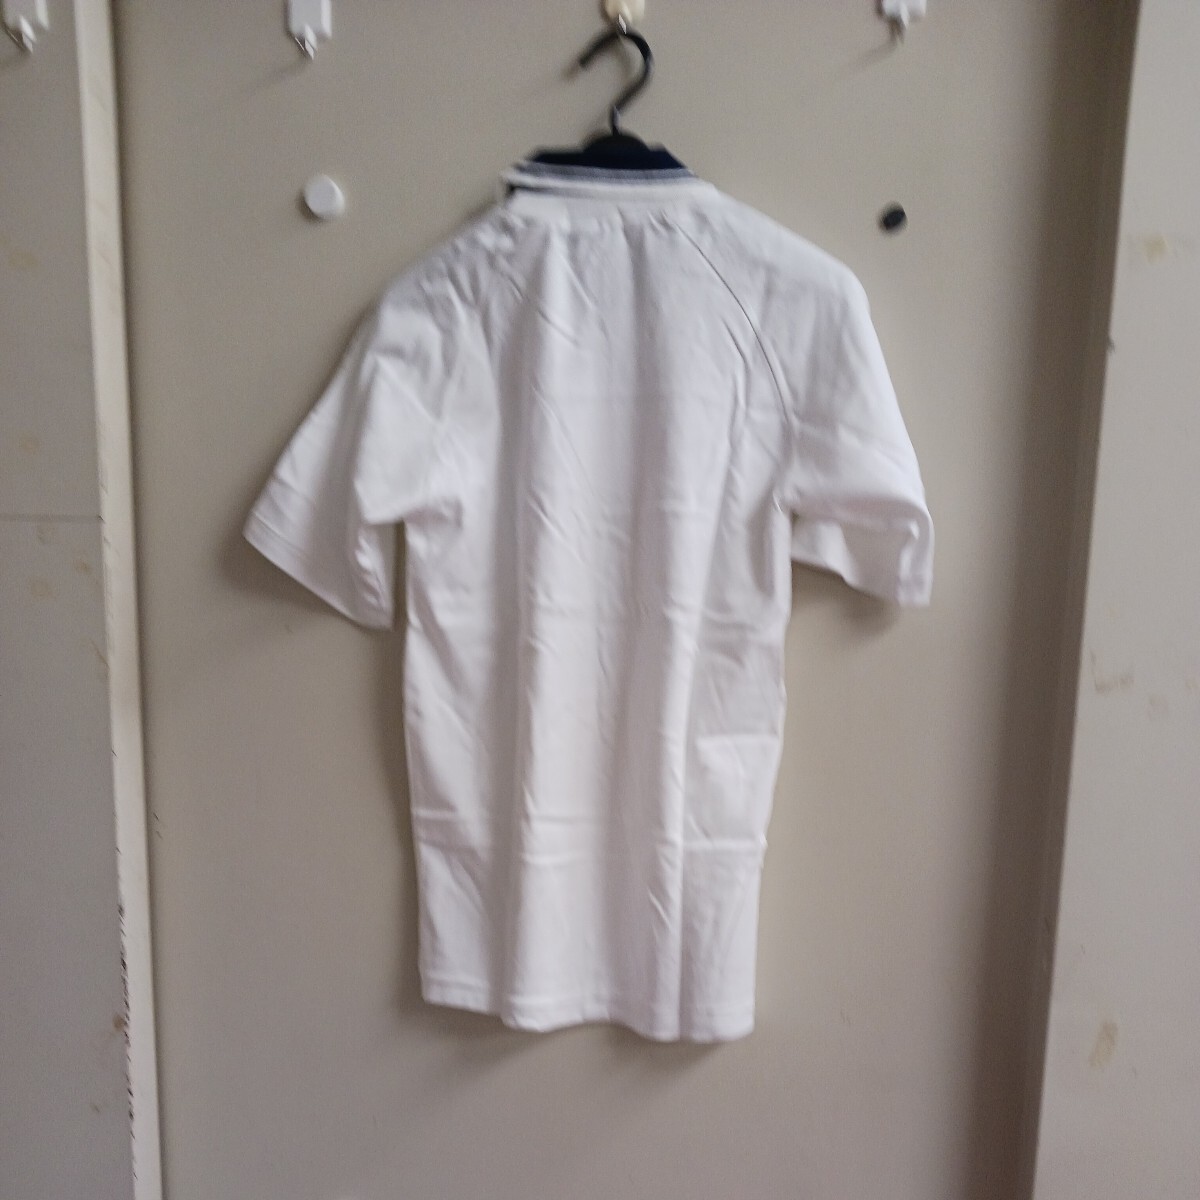  локва . страна body 1981 год рубашка рубашка-поло футболка 